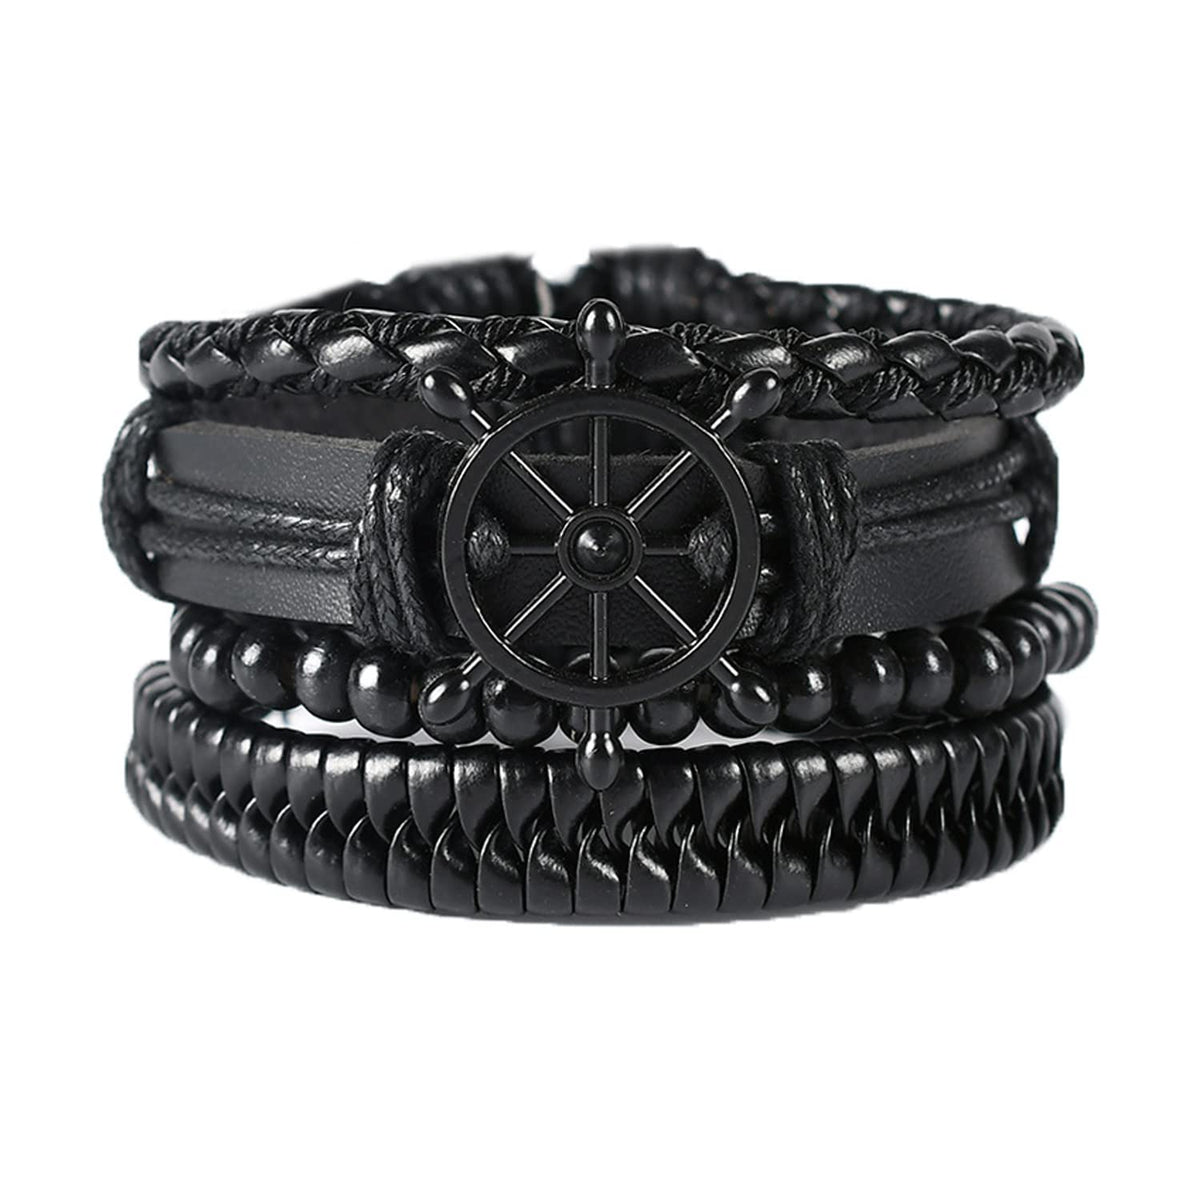 Kairangi Bracelets for Men and Boys Leather Bracelet Set for Men Multi Layered Leather Wrap Wrist Bracelet | Birthday Gift for Men & Boys Anniversary Gift for Husband (Design 14)